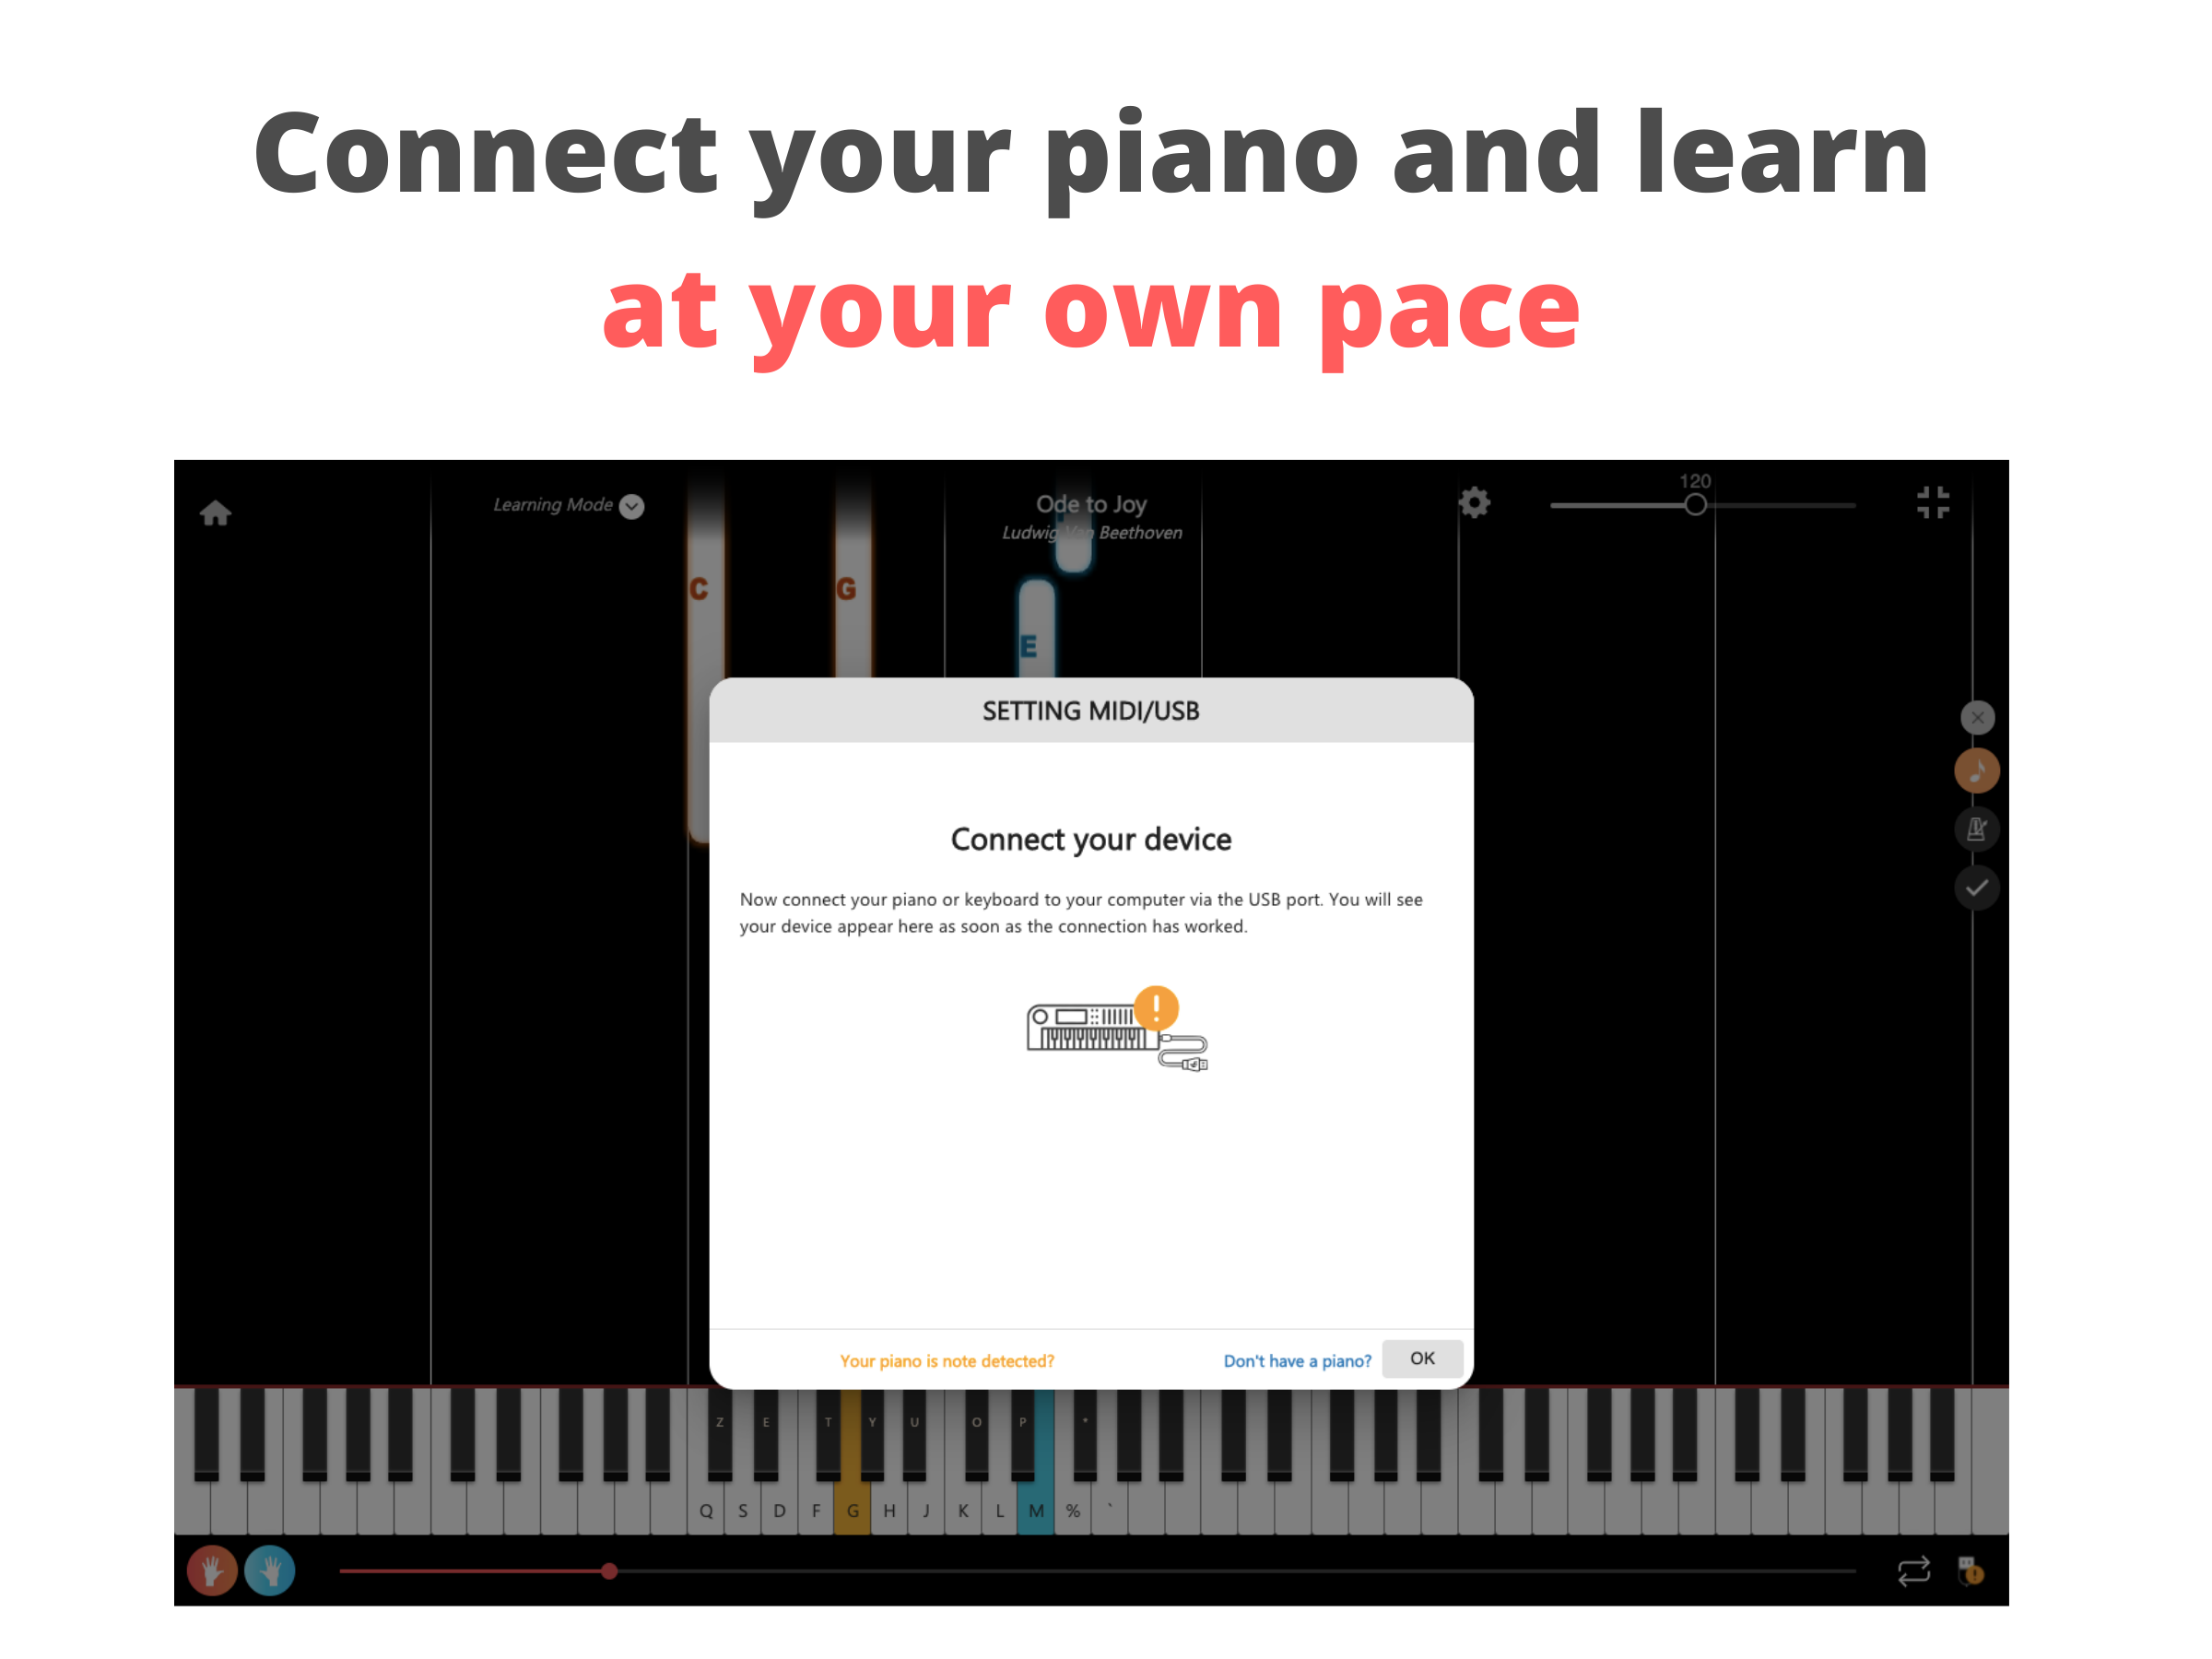 La Touche Musicale - Learn piano